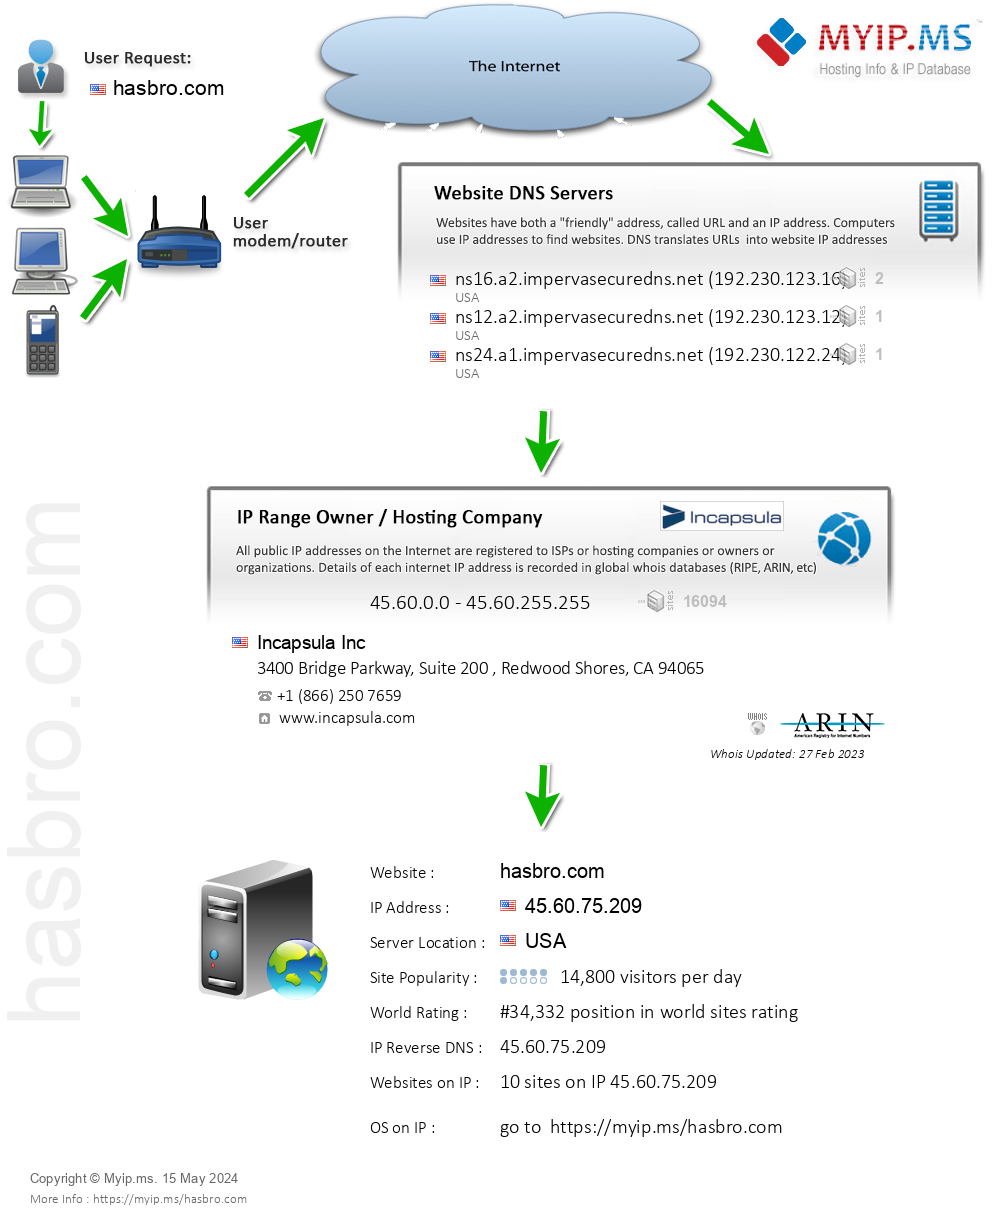 Hasbro.com - Website Hosting Visual IP Diagram